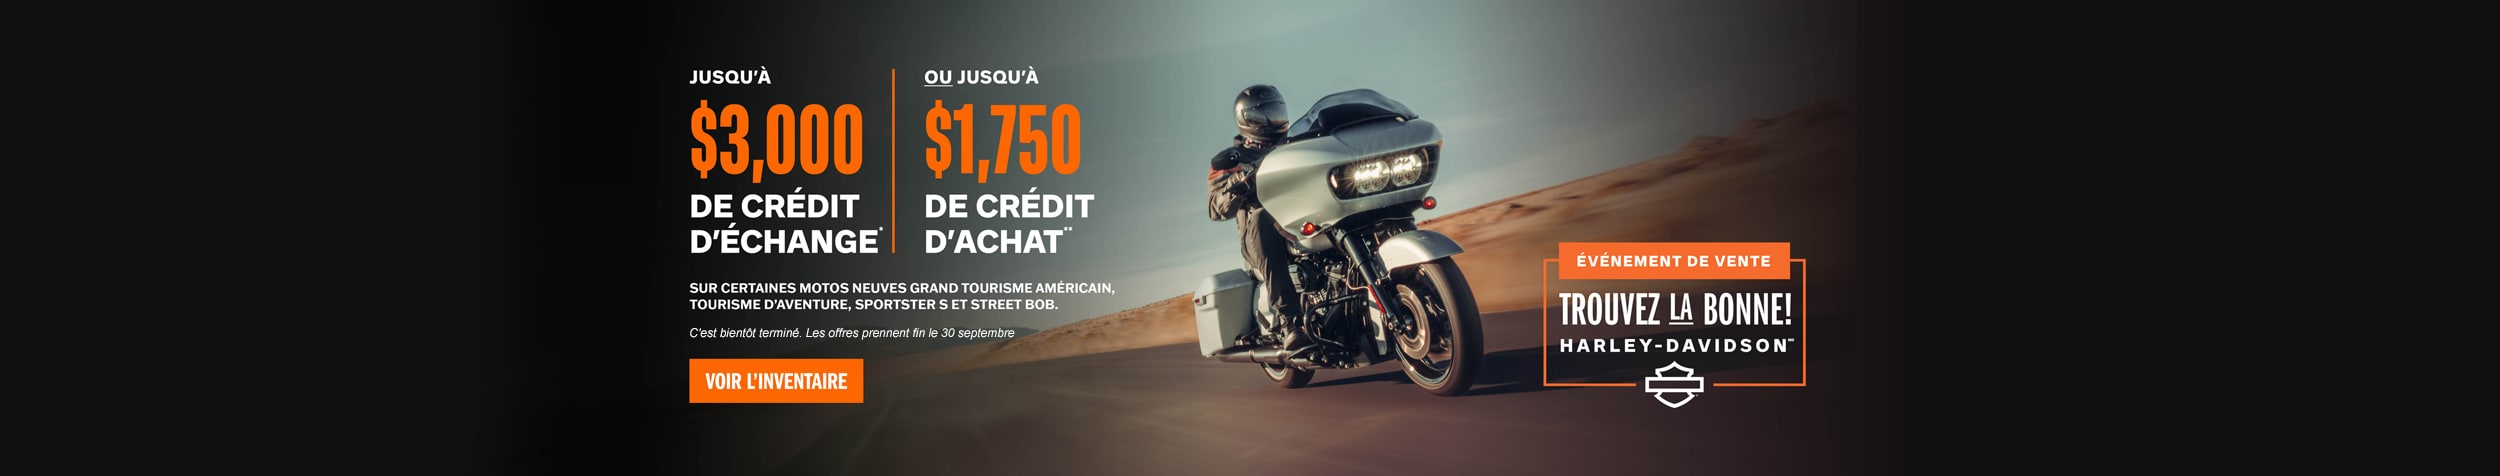 Événemement de vente – Trouvez la bonne! Harley-Davidson